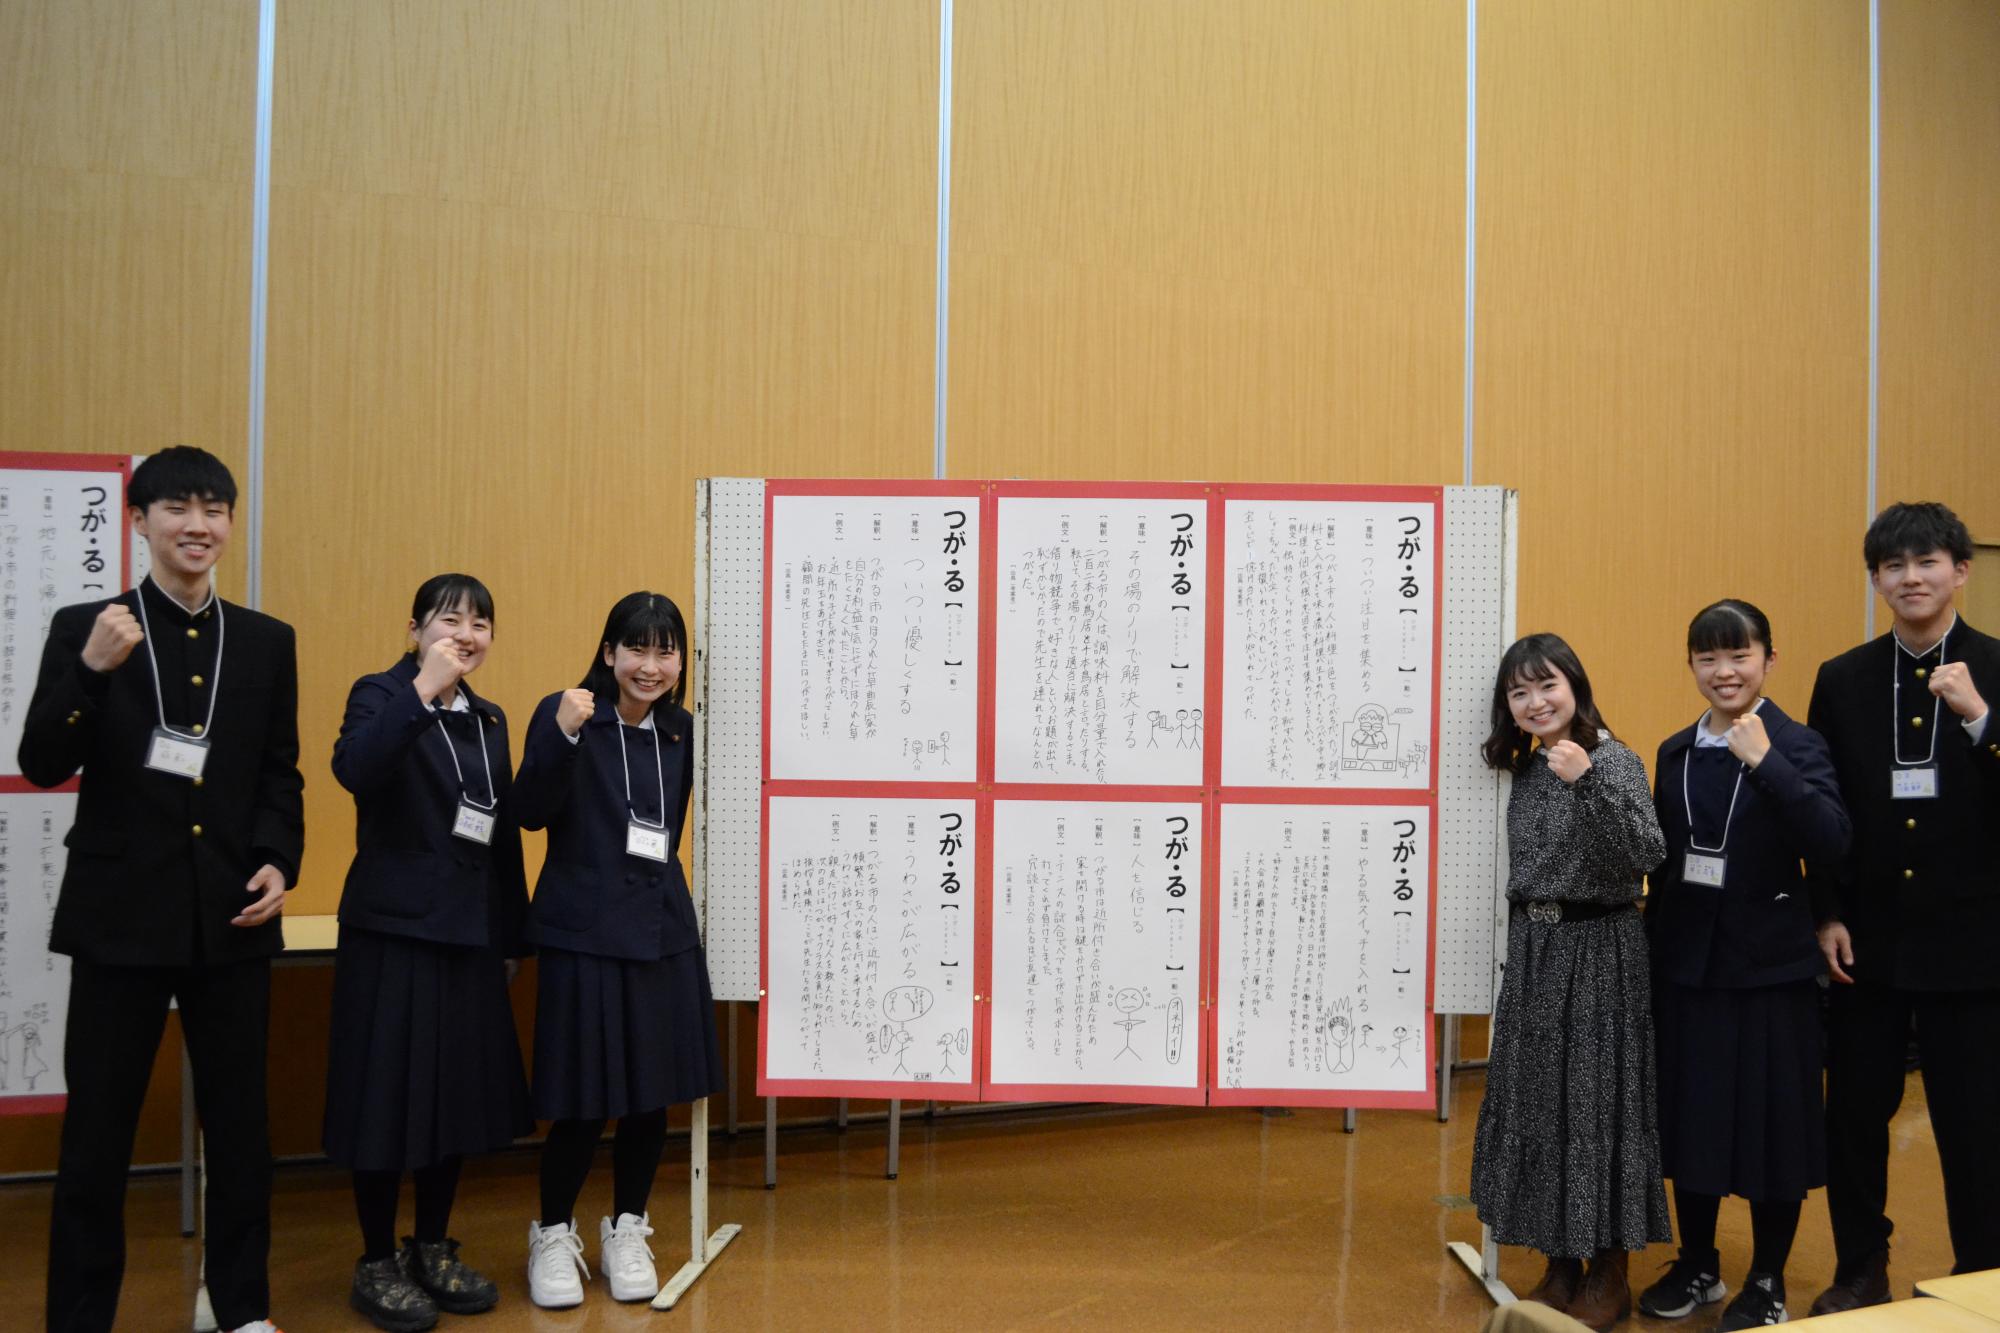 6枚のポスターが貼られたパネルを中心に左に3名、右に3名の参加者がガッツポーズして立っている写真